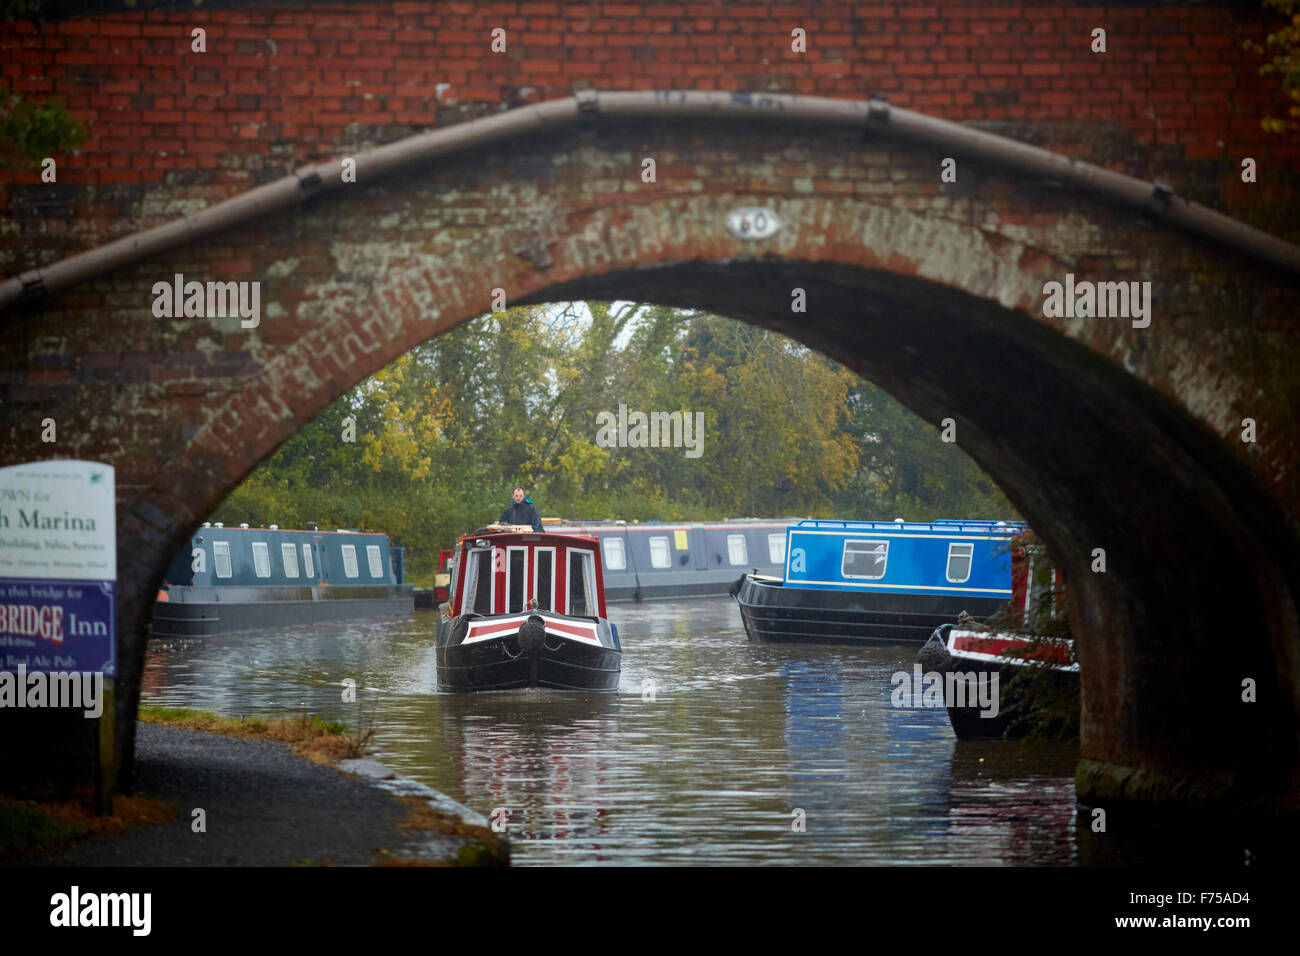 Alvechurch in Worcestershire Marina Wasserstraße Boot yard Nebel blauen Kanal Herbst durch Bogenbrücke unter UK große Br Stockfoto